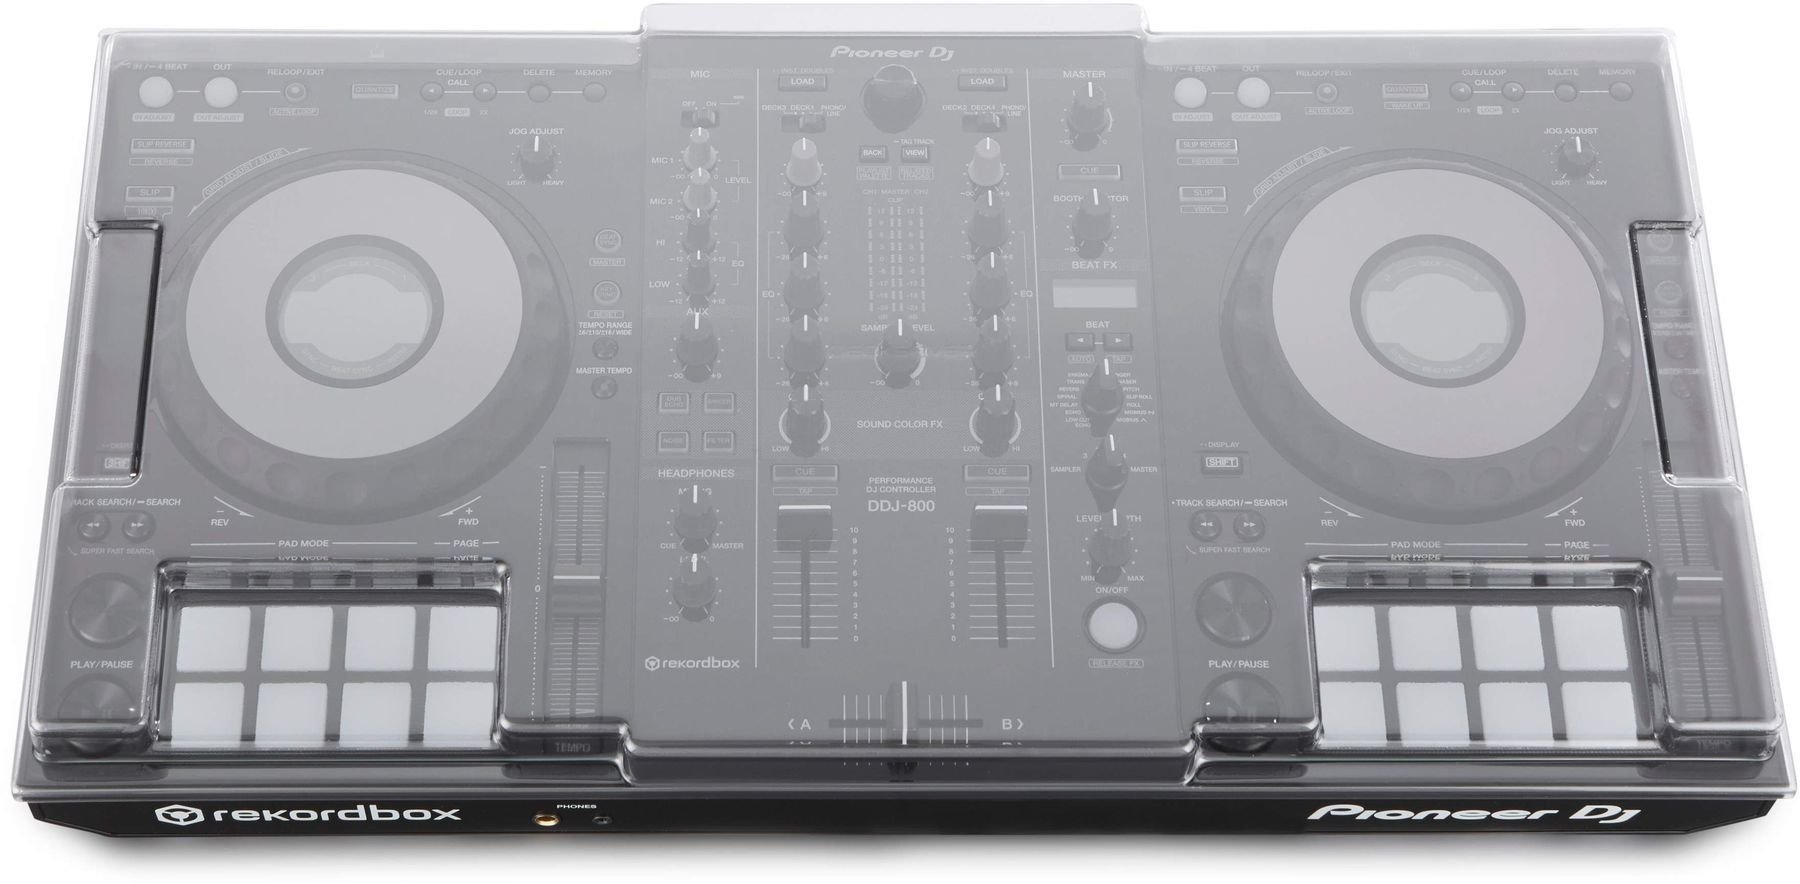 Beschermhoes voor DJ-controller Decksaver Pioneer DDJ-800